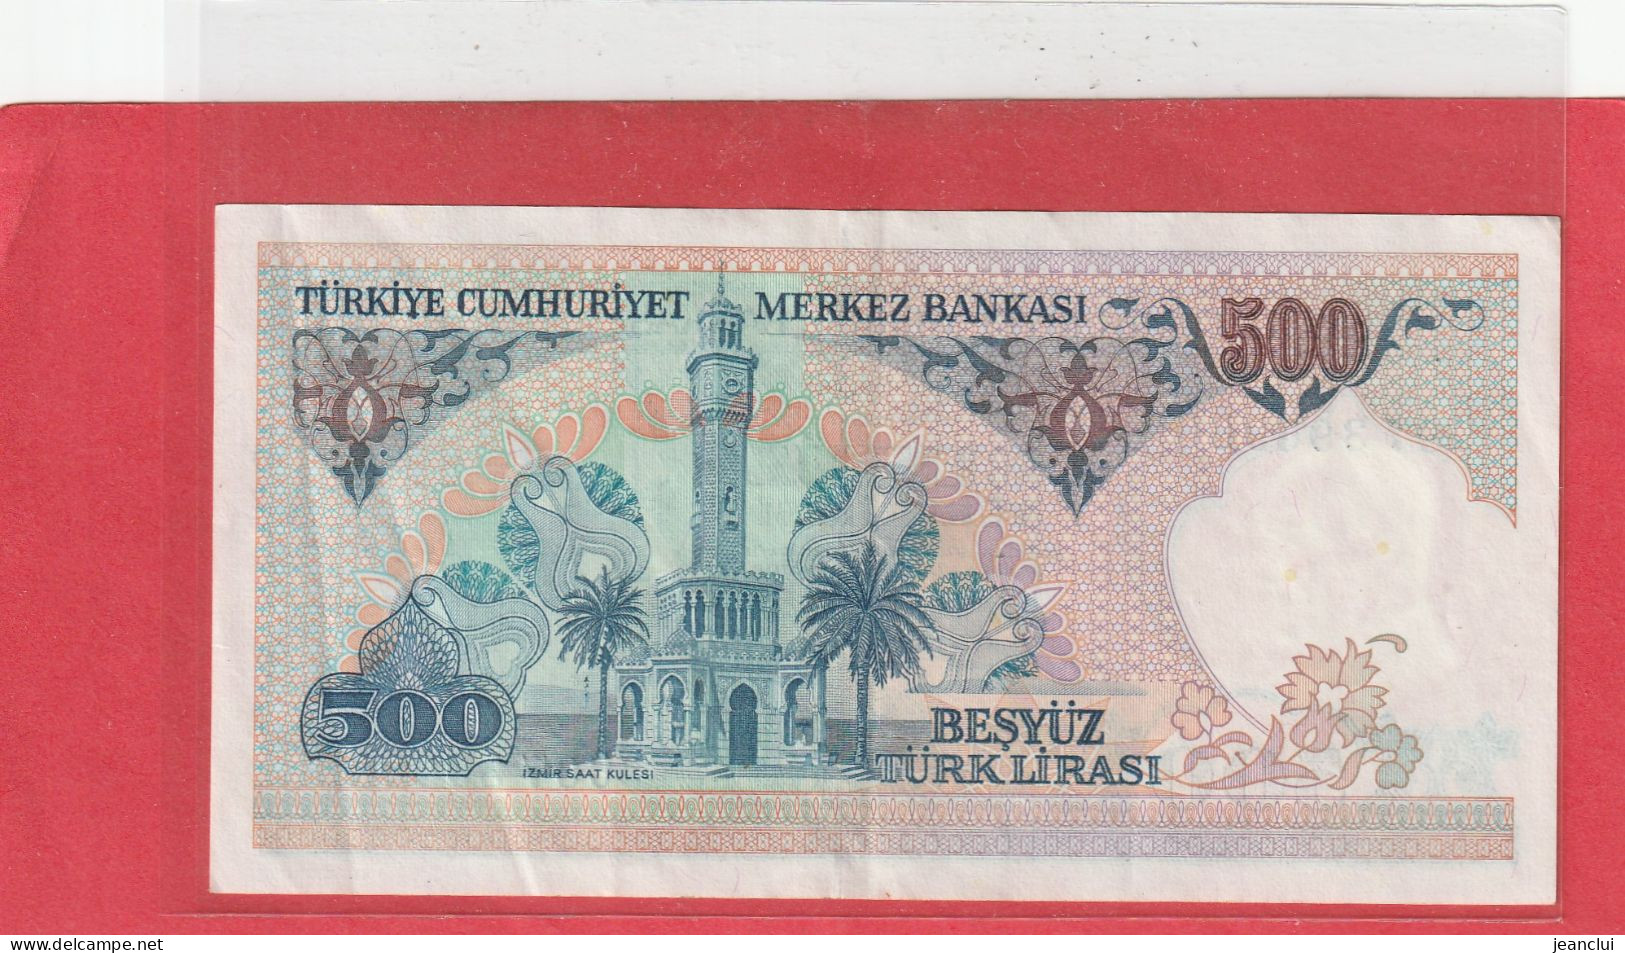 TURKIYE CUMHURIYET MERKEZ BANKASI . 500 LIRA . 14 OCAK 1970  . N°  C 07396966 .  2 SCANNES  .  BEL ETAT - Turkije